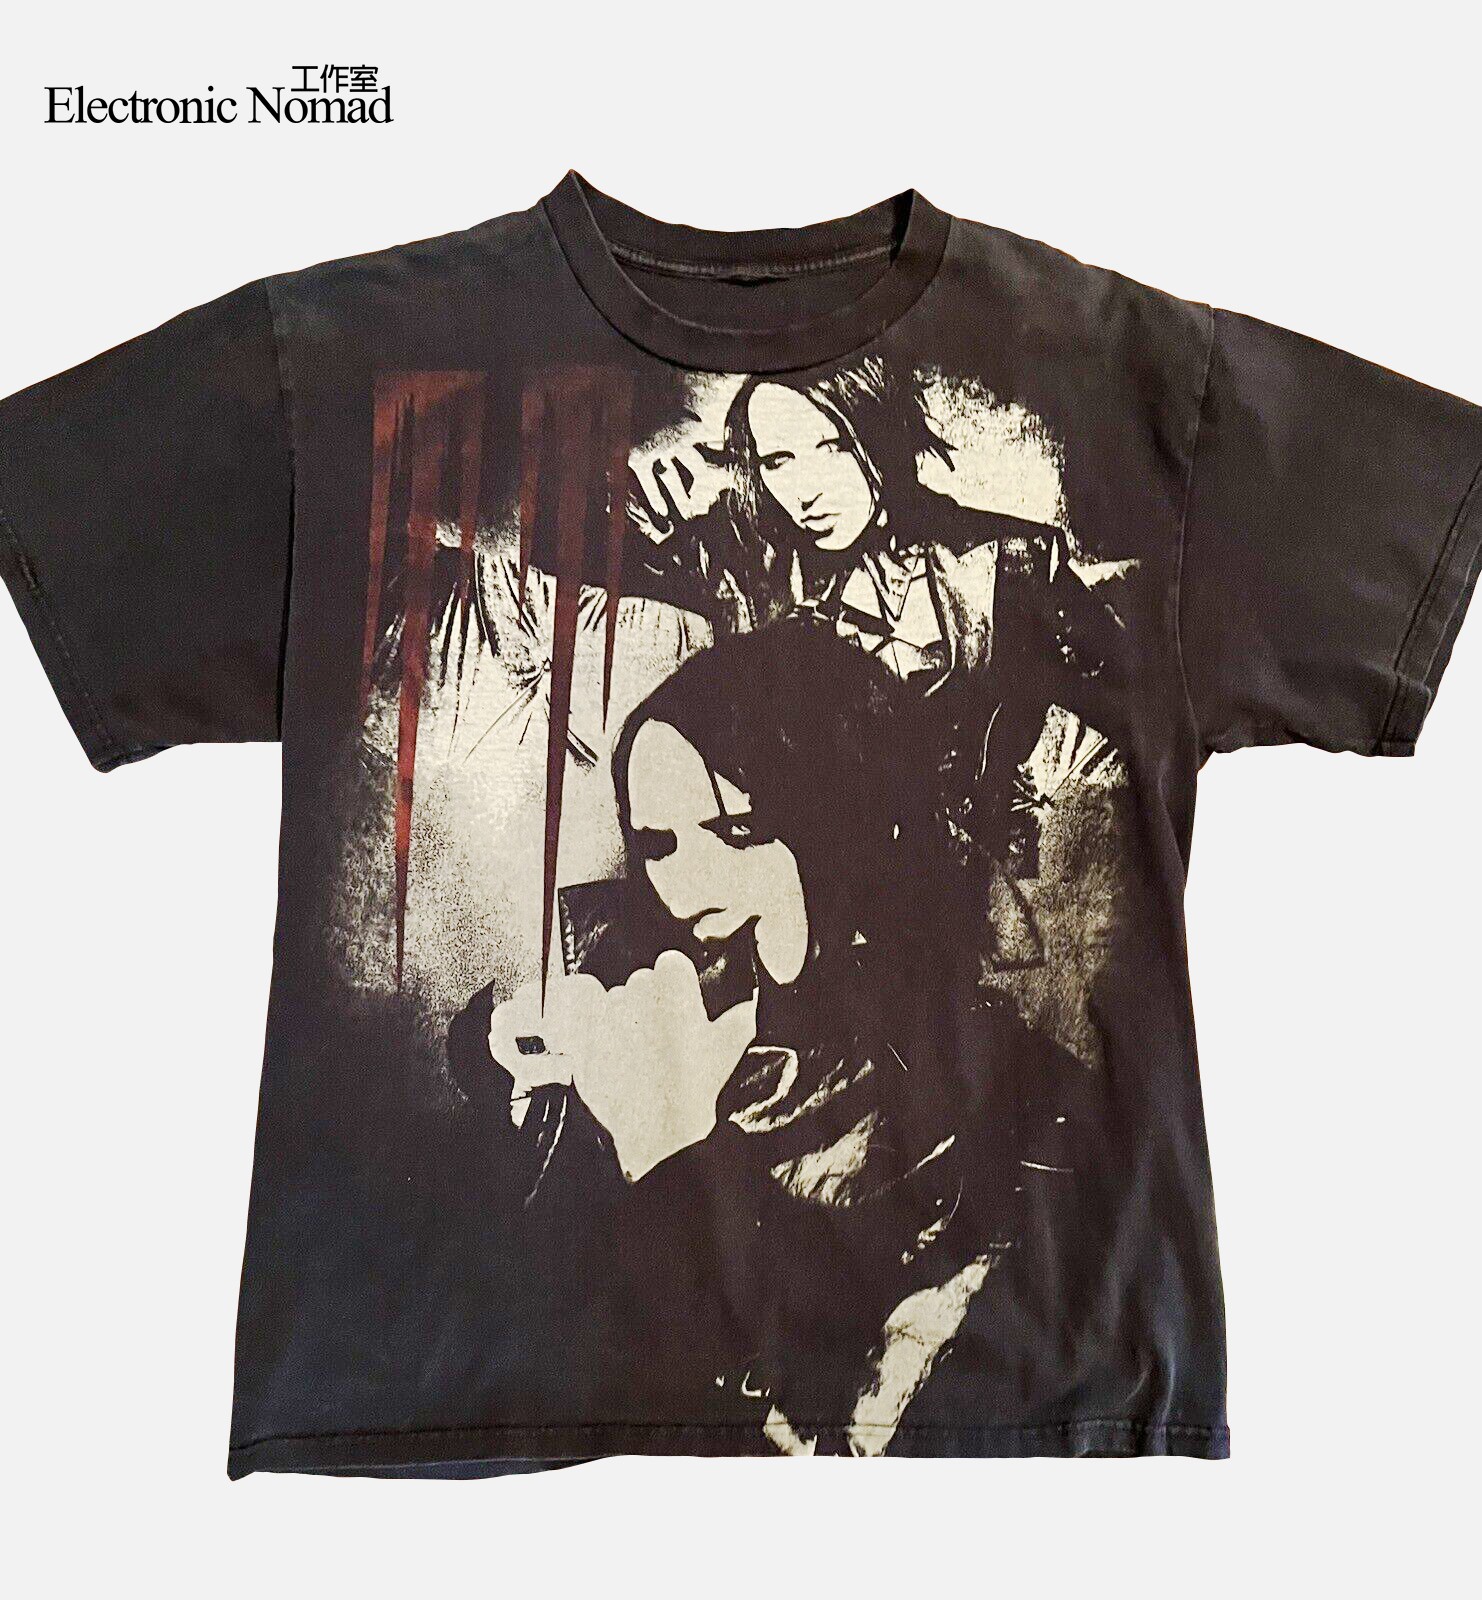 EN水洗大师歌手 玛丽莲 曼森  Marilyn Manson美潮短袖T恤90年代